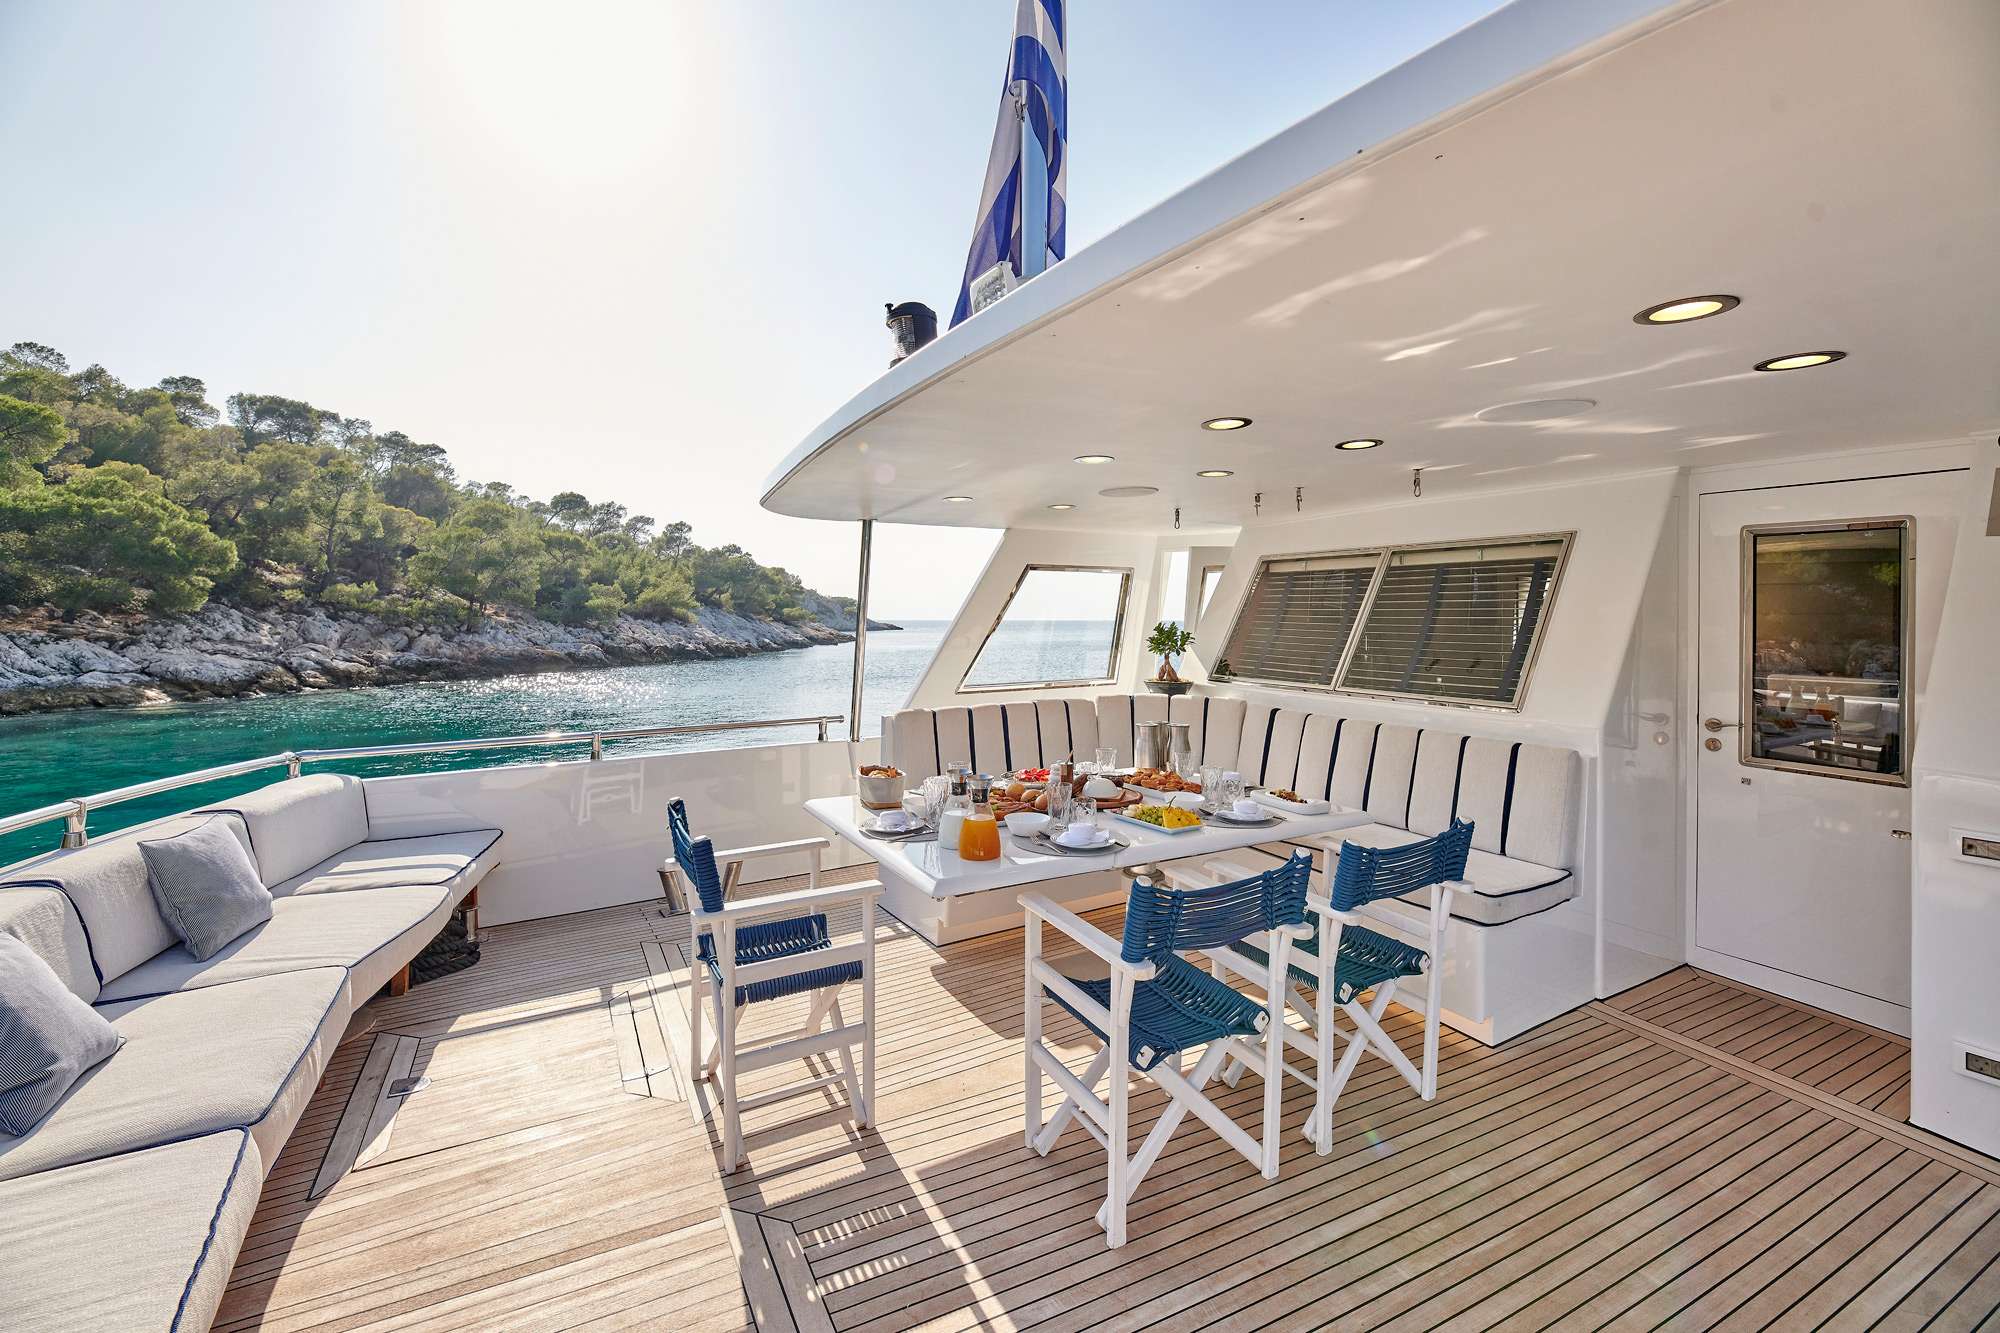 ALAYA - Yacht Charter Sami & Boat hire in Greece 4